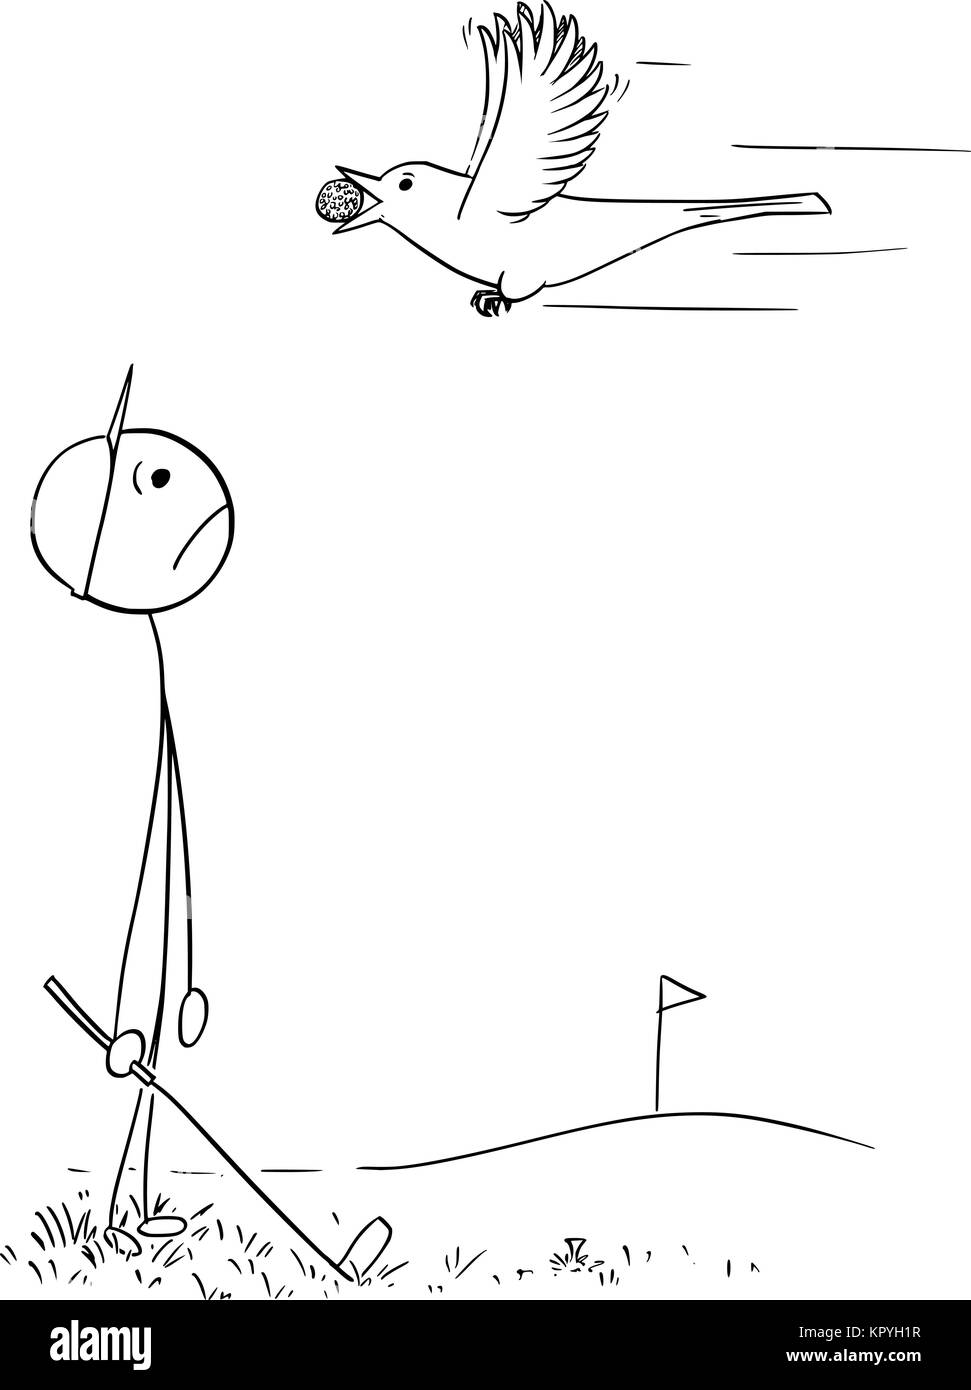 Cartoon stick man dessin illustration d'un homme homme joueur de golf à vol d'oiseau triste en transportant sa balle. Illustration de Vecteur